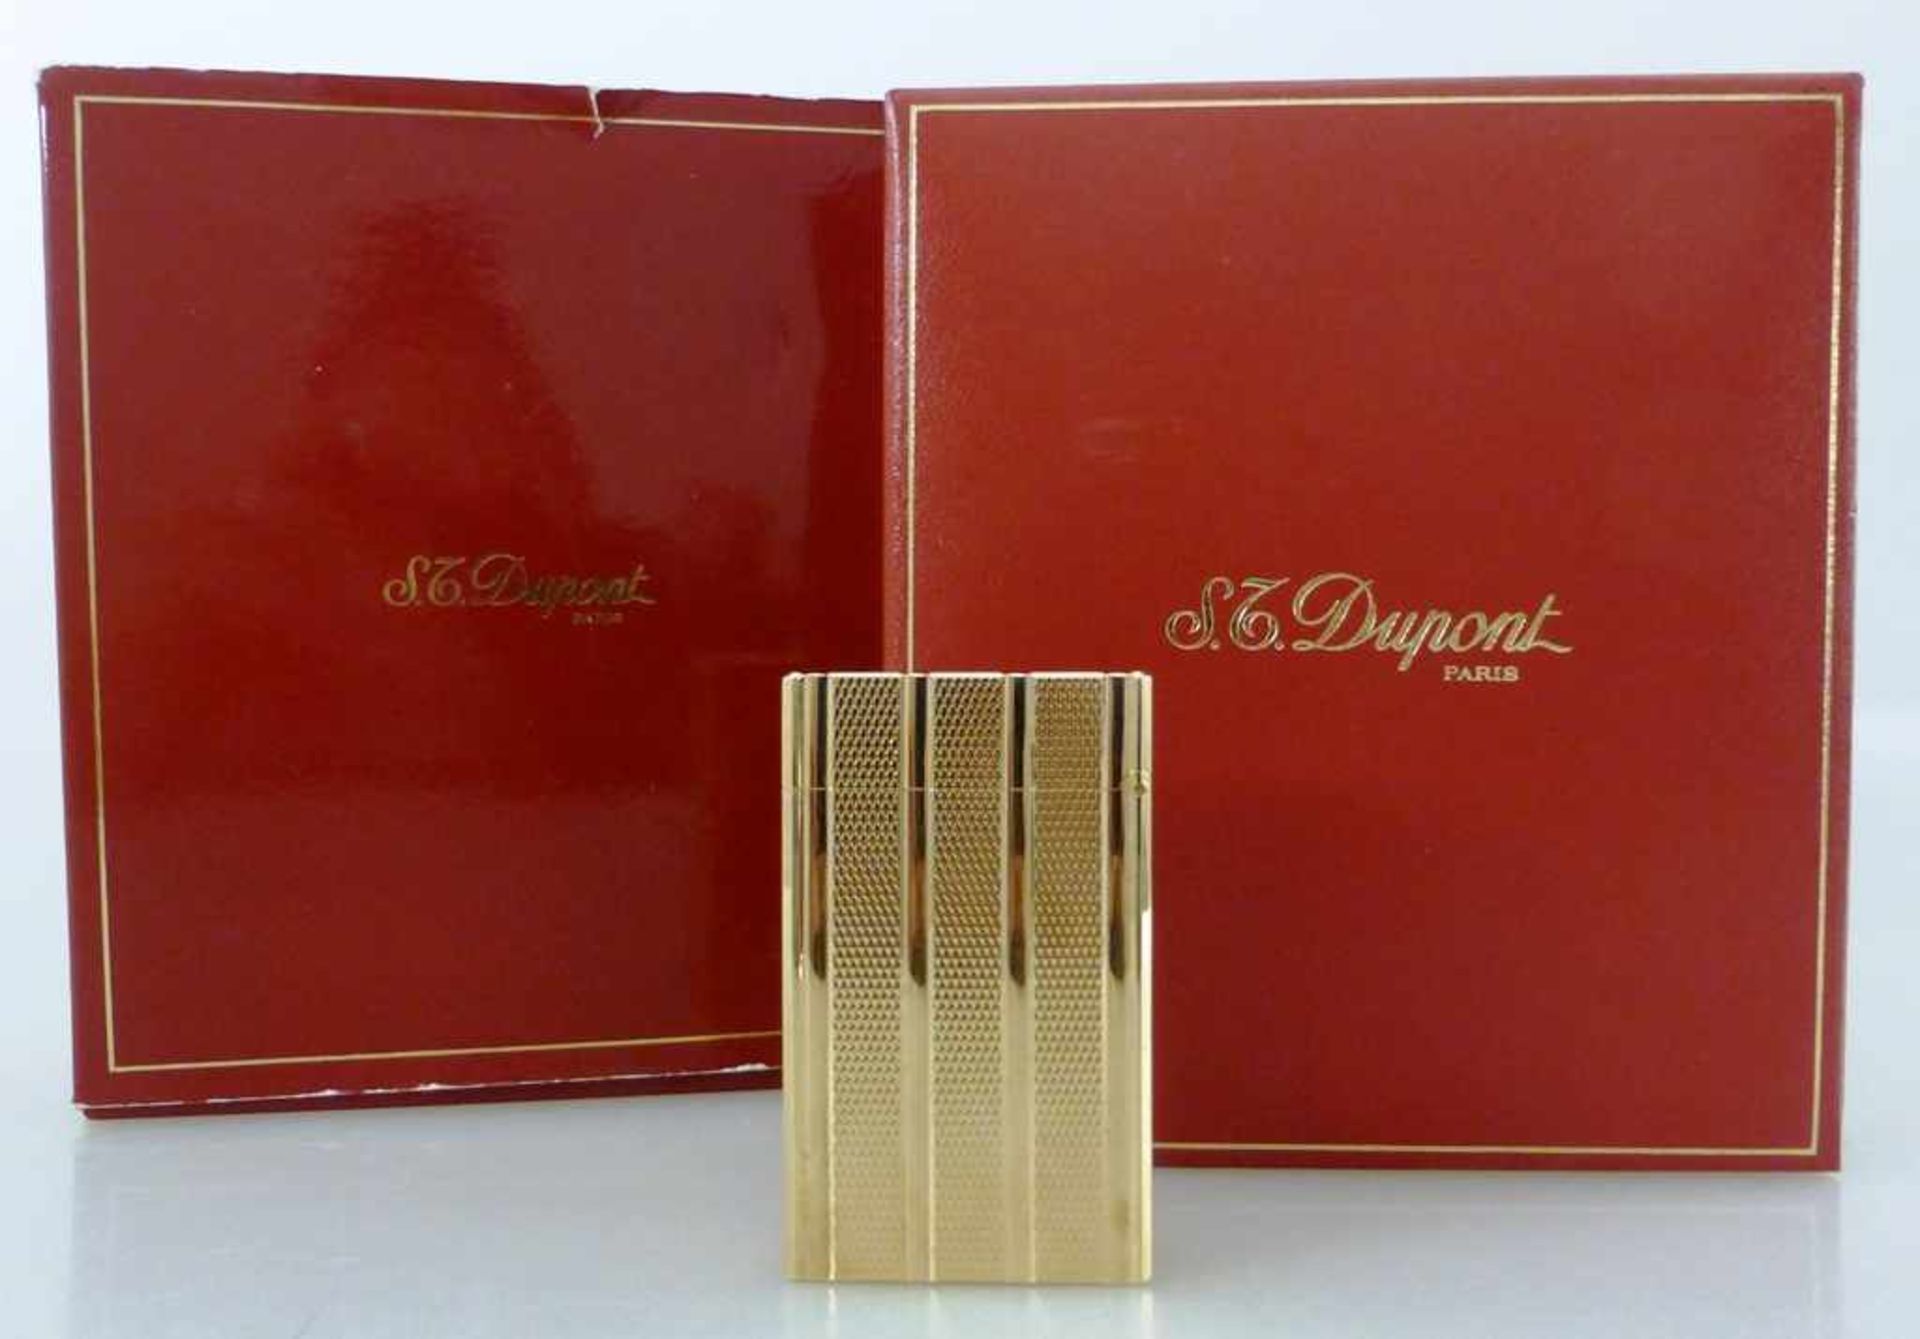 Dupont Paris, Feuerzeug im orig. Etui und Beschreibung, Garantiekarte, erworben 1990, vergoldet,